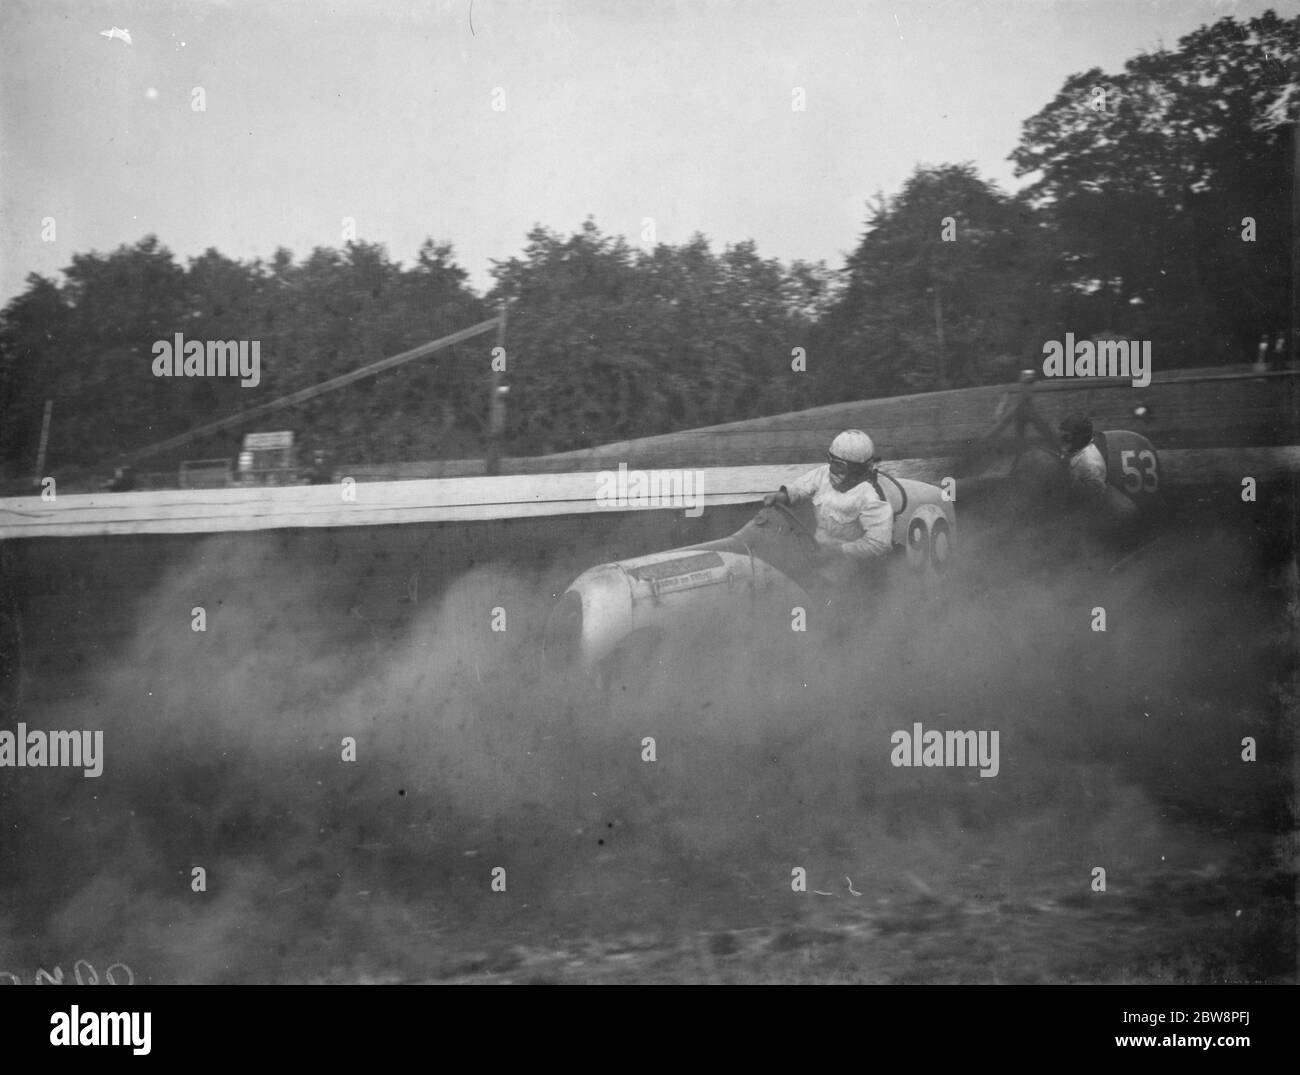 Der Crystal Palace Miniatur Autorennen Grand prix . Frank Chiswell fährt mit seinem Auto in einer Staubwolke. 1938 Stockfoto